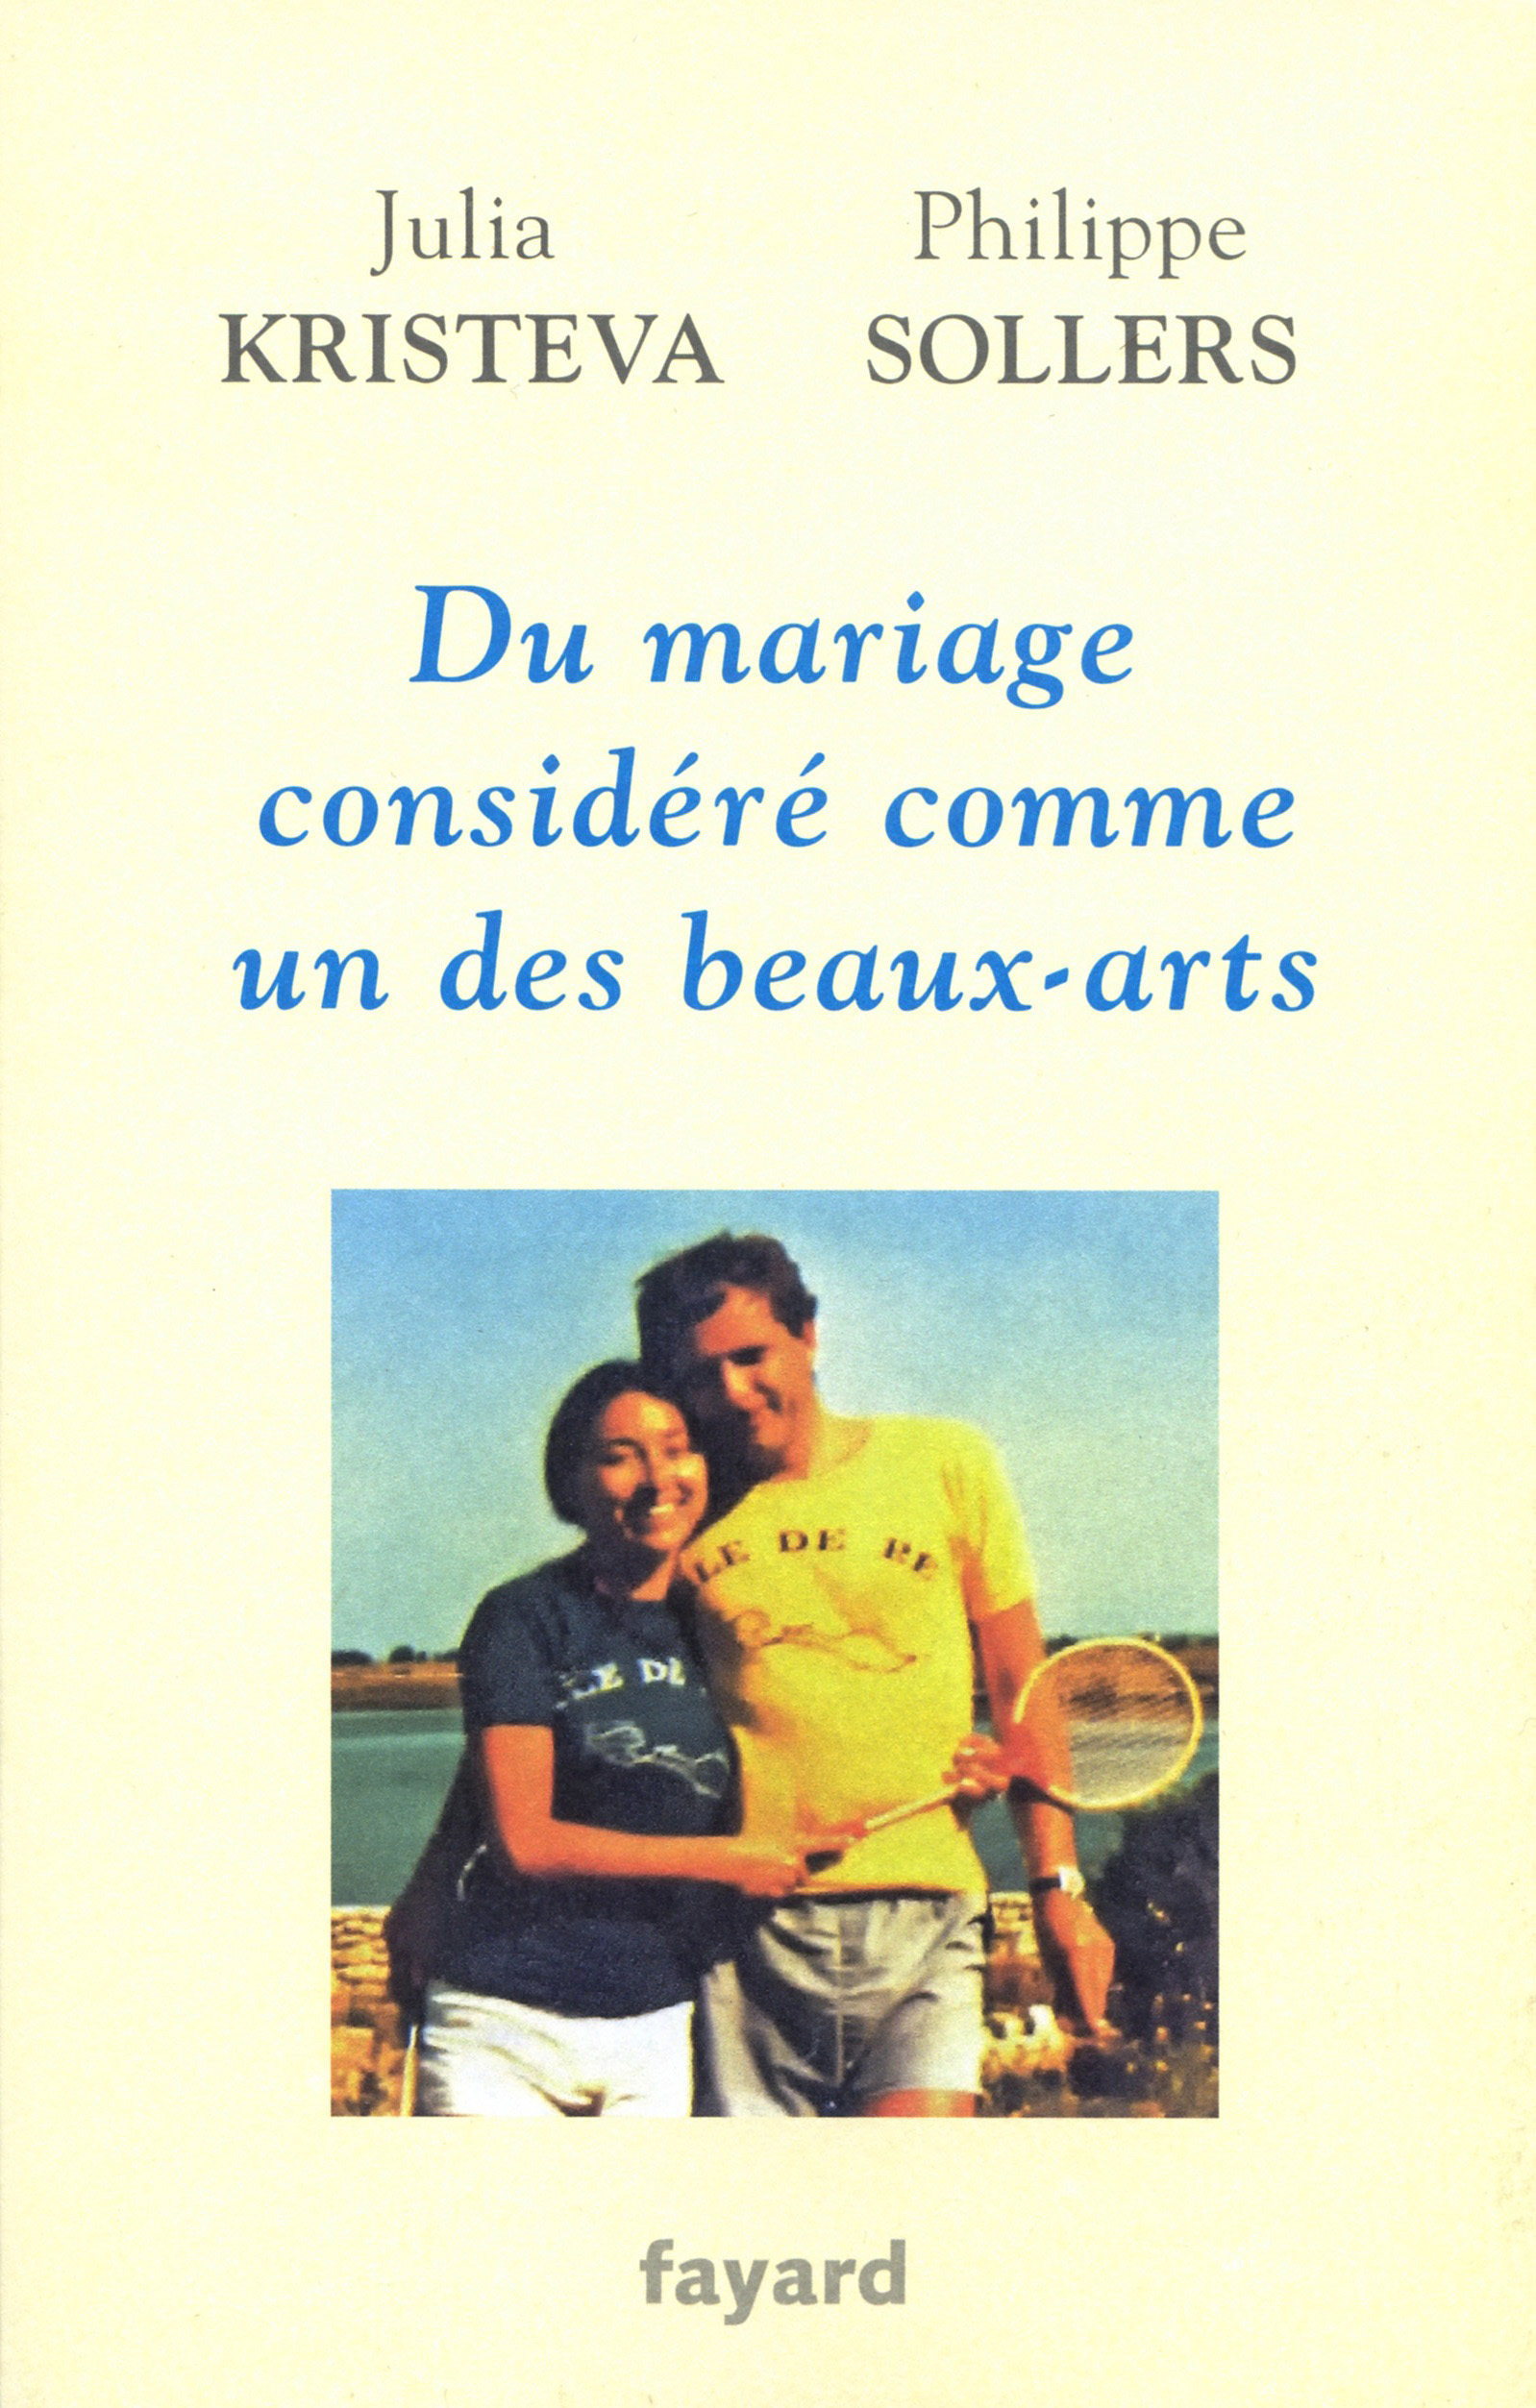 Philippe Sollers, Julia Kristeva - Du mariage considéré comme un des beaux-arts, Fayard, 2015